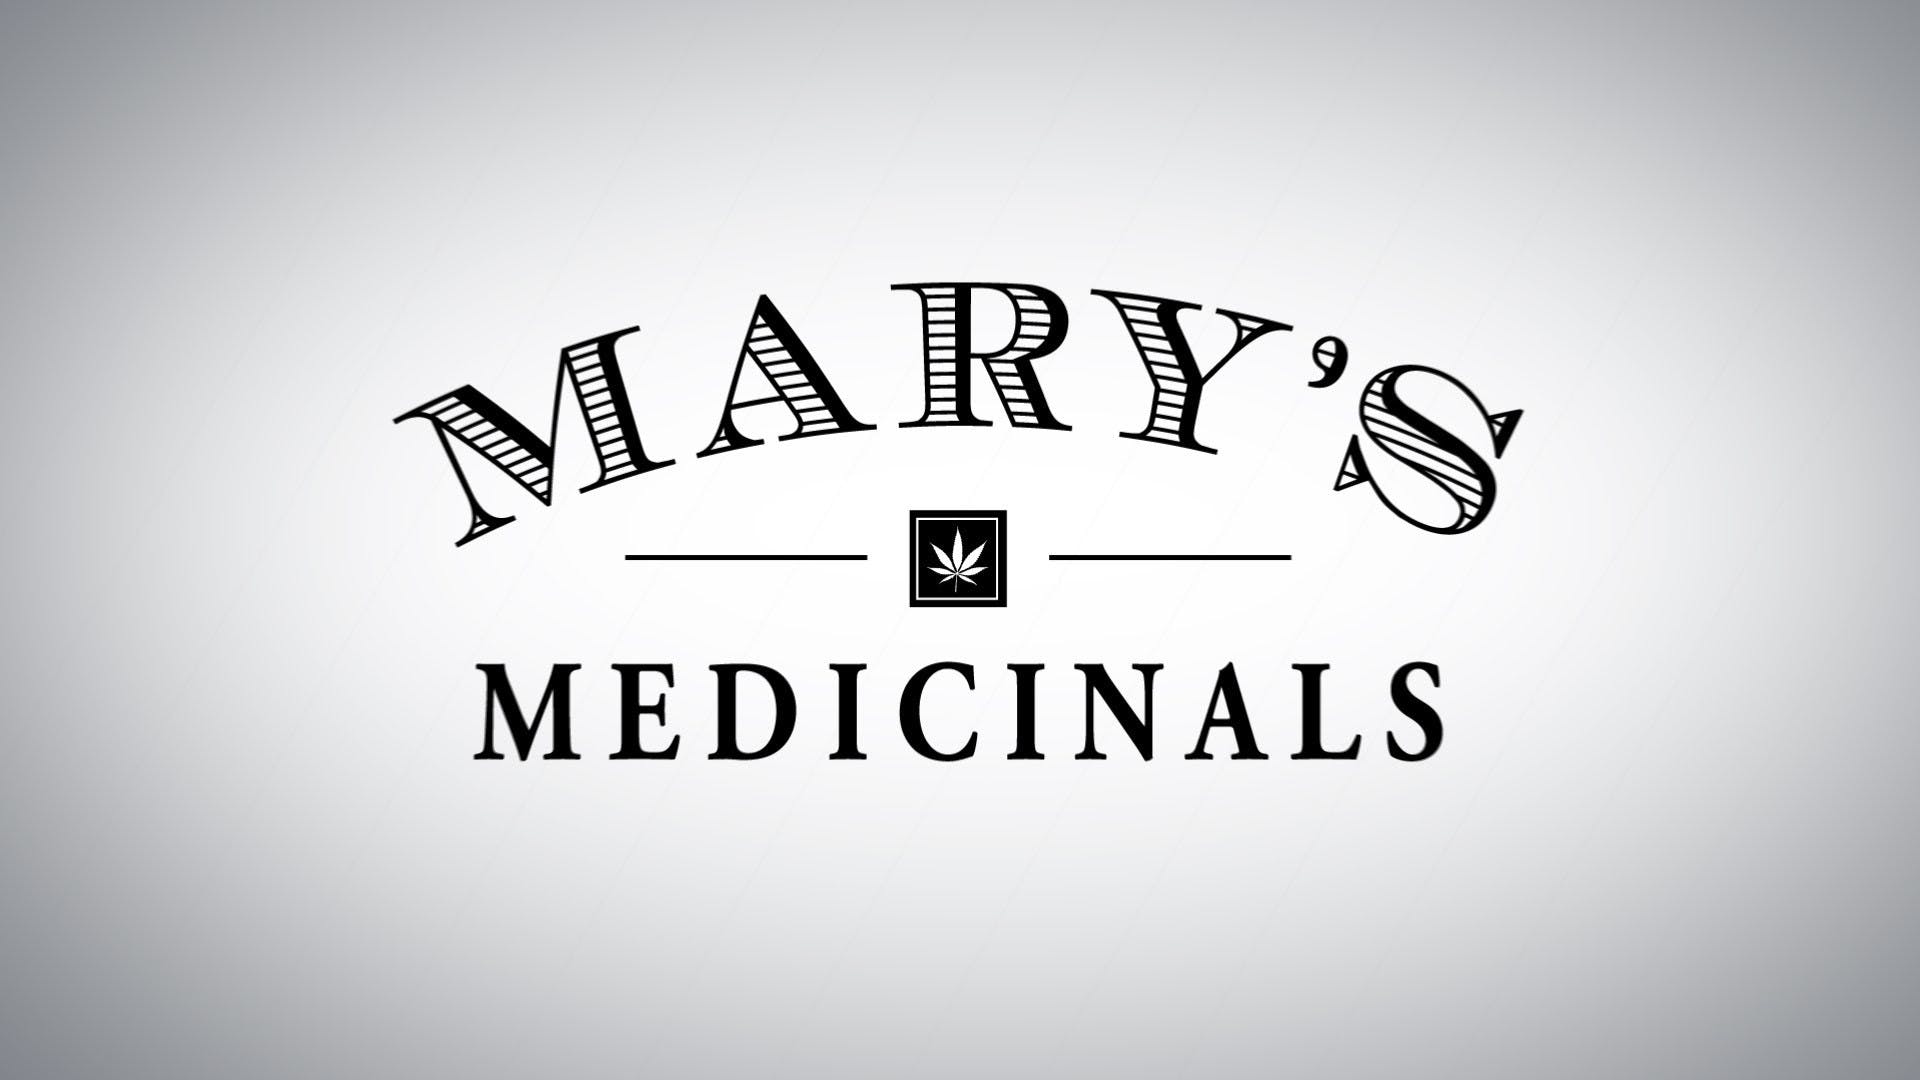 Mary's Medicinal - Sativa Transdermal Patch